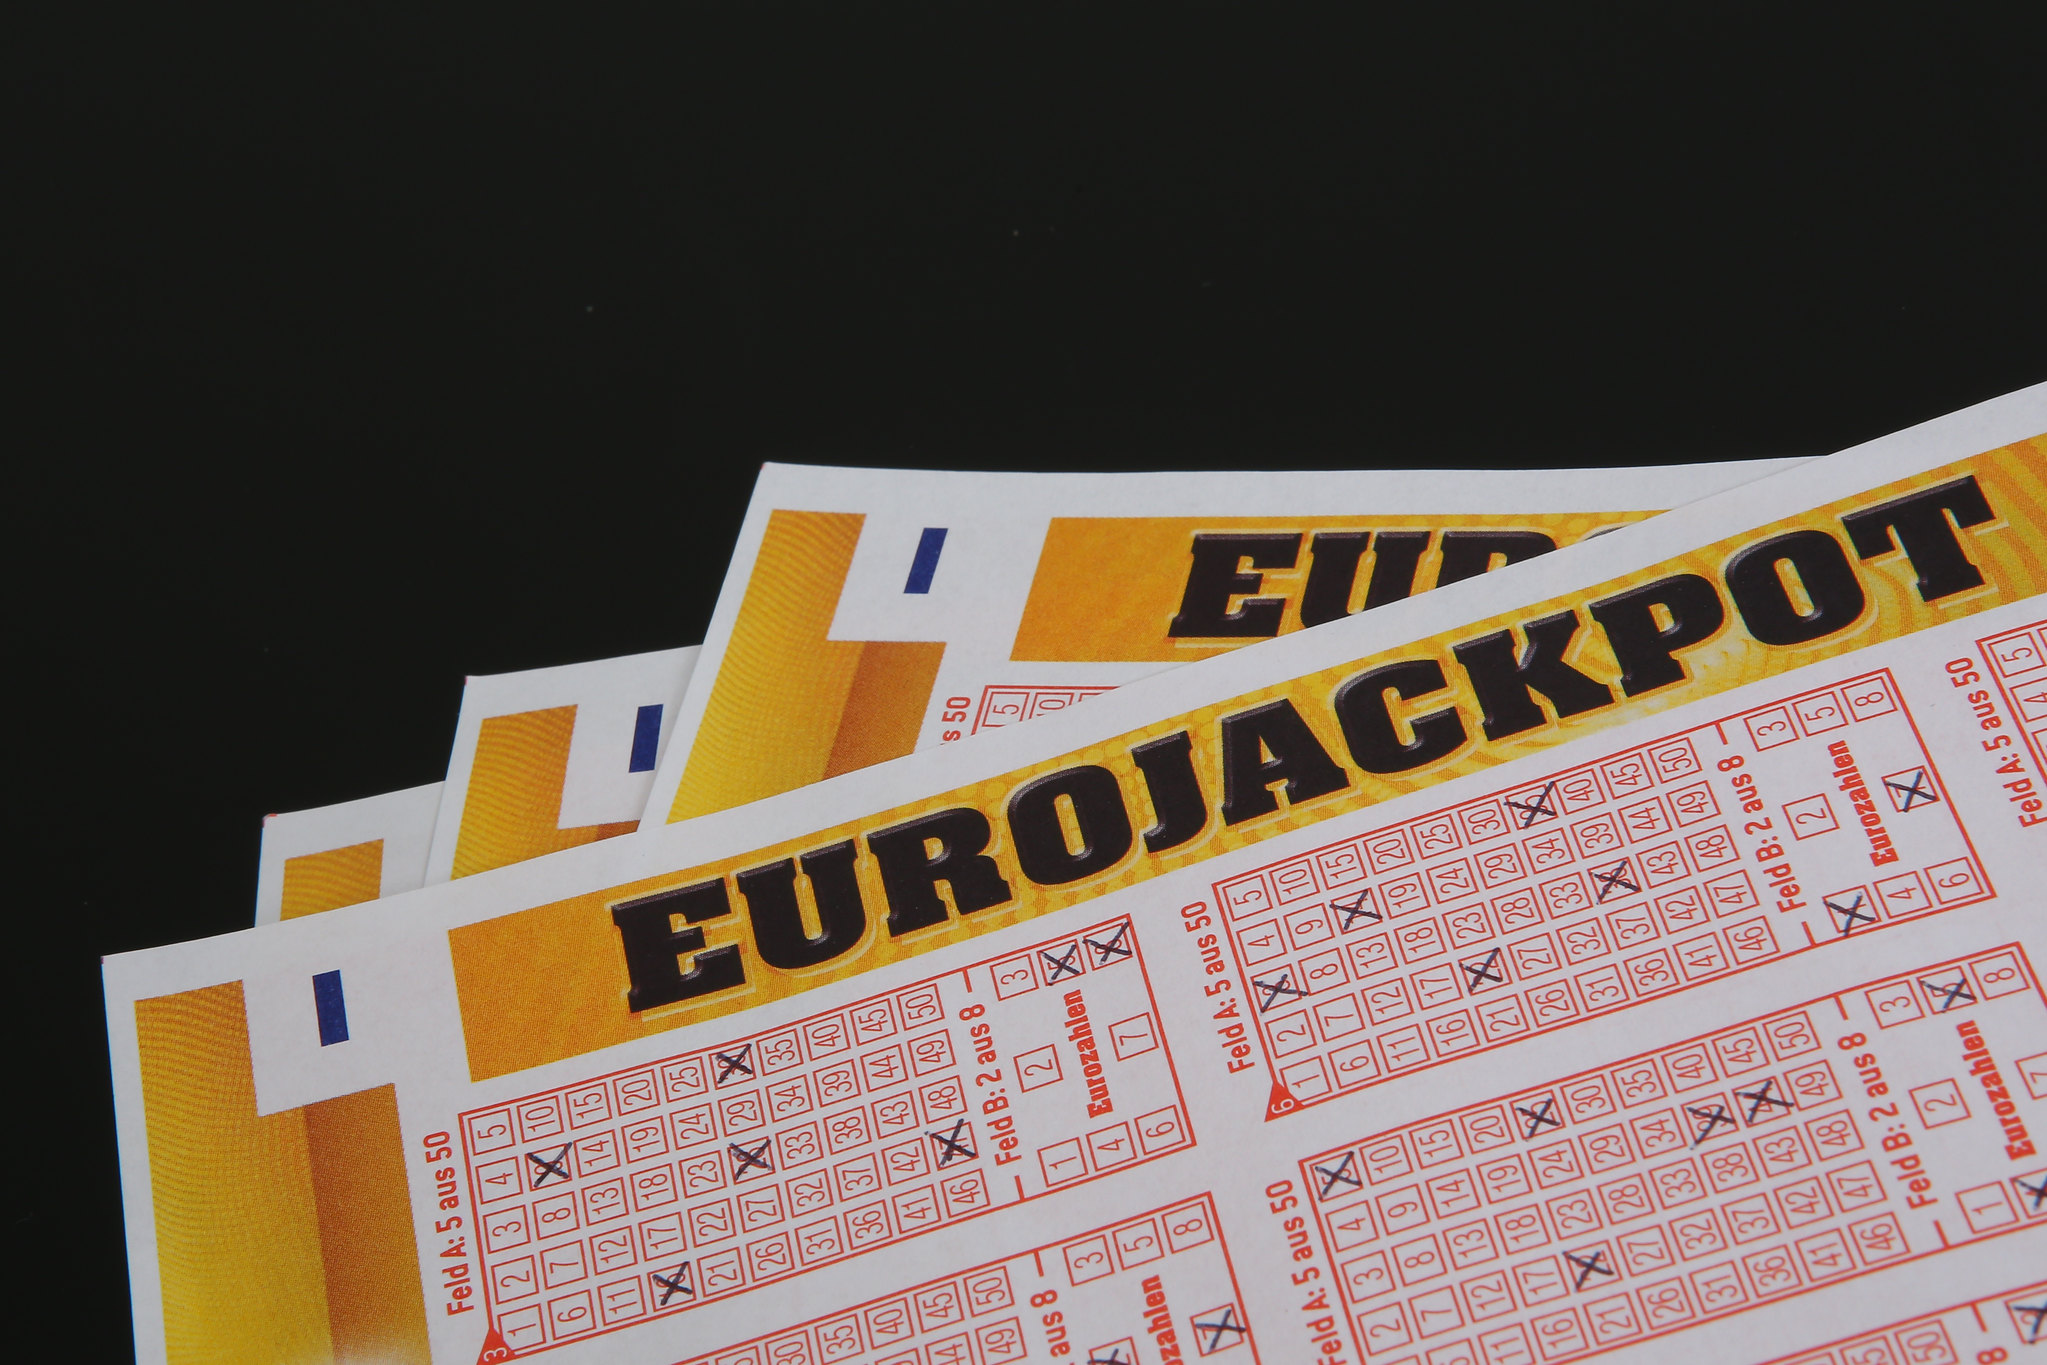 Jutawan Eurojackpot dari Poland: rekod keuntungan sebanyak 45.6 juta euro